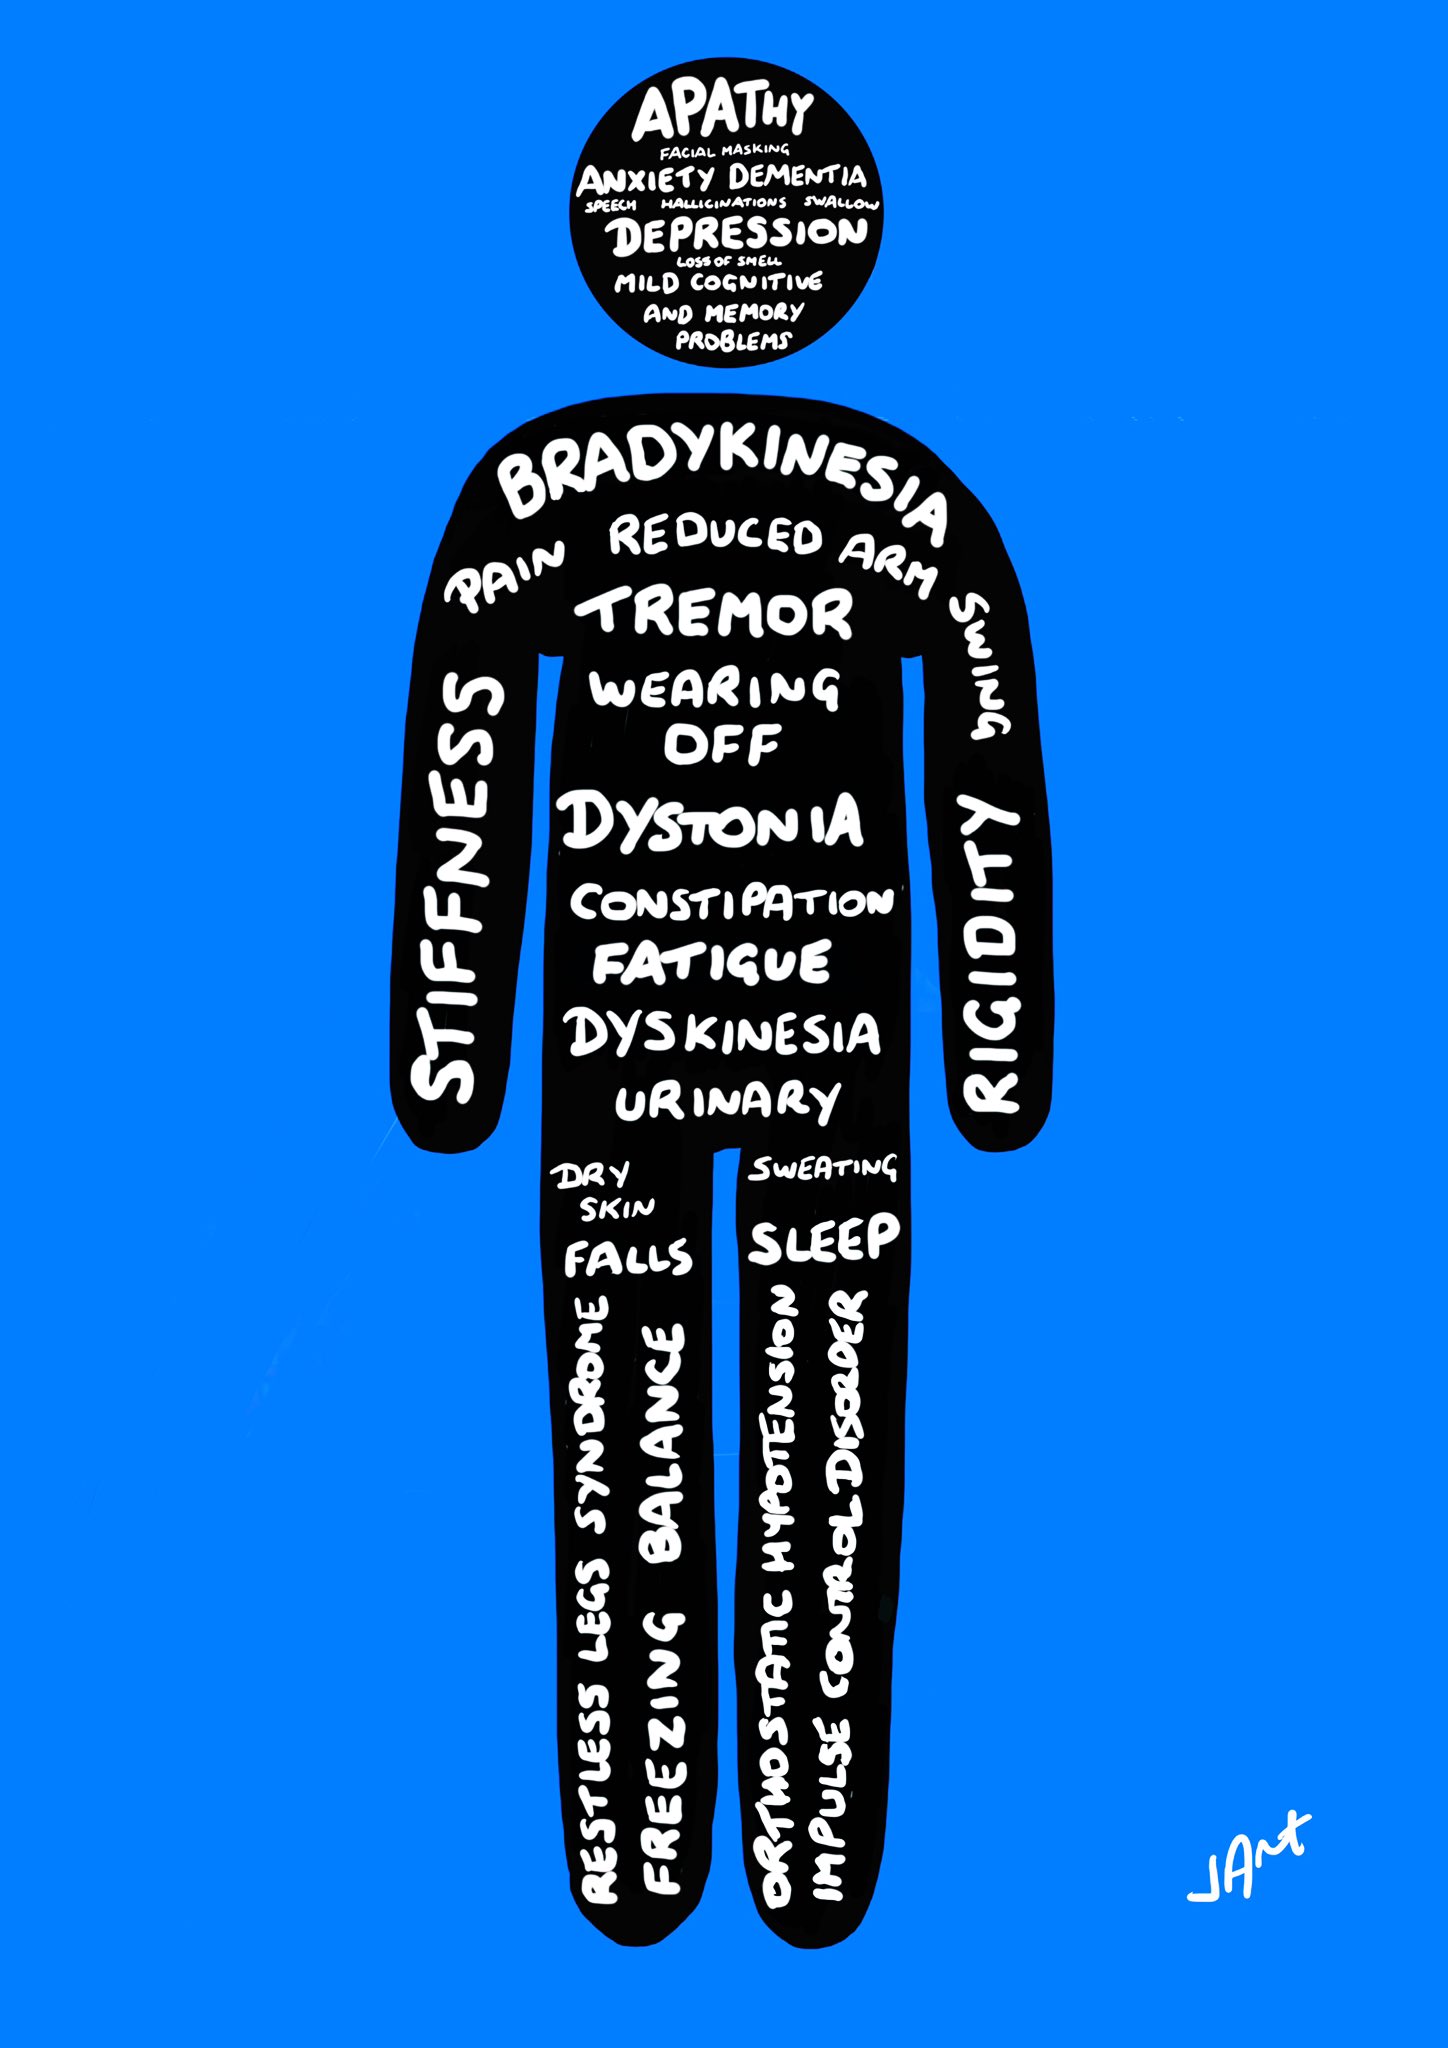 The many Parkinsonâ€™s symptoms! â€“ My Parkinson